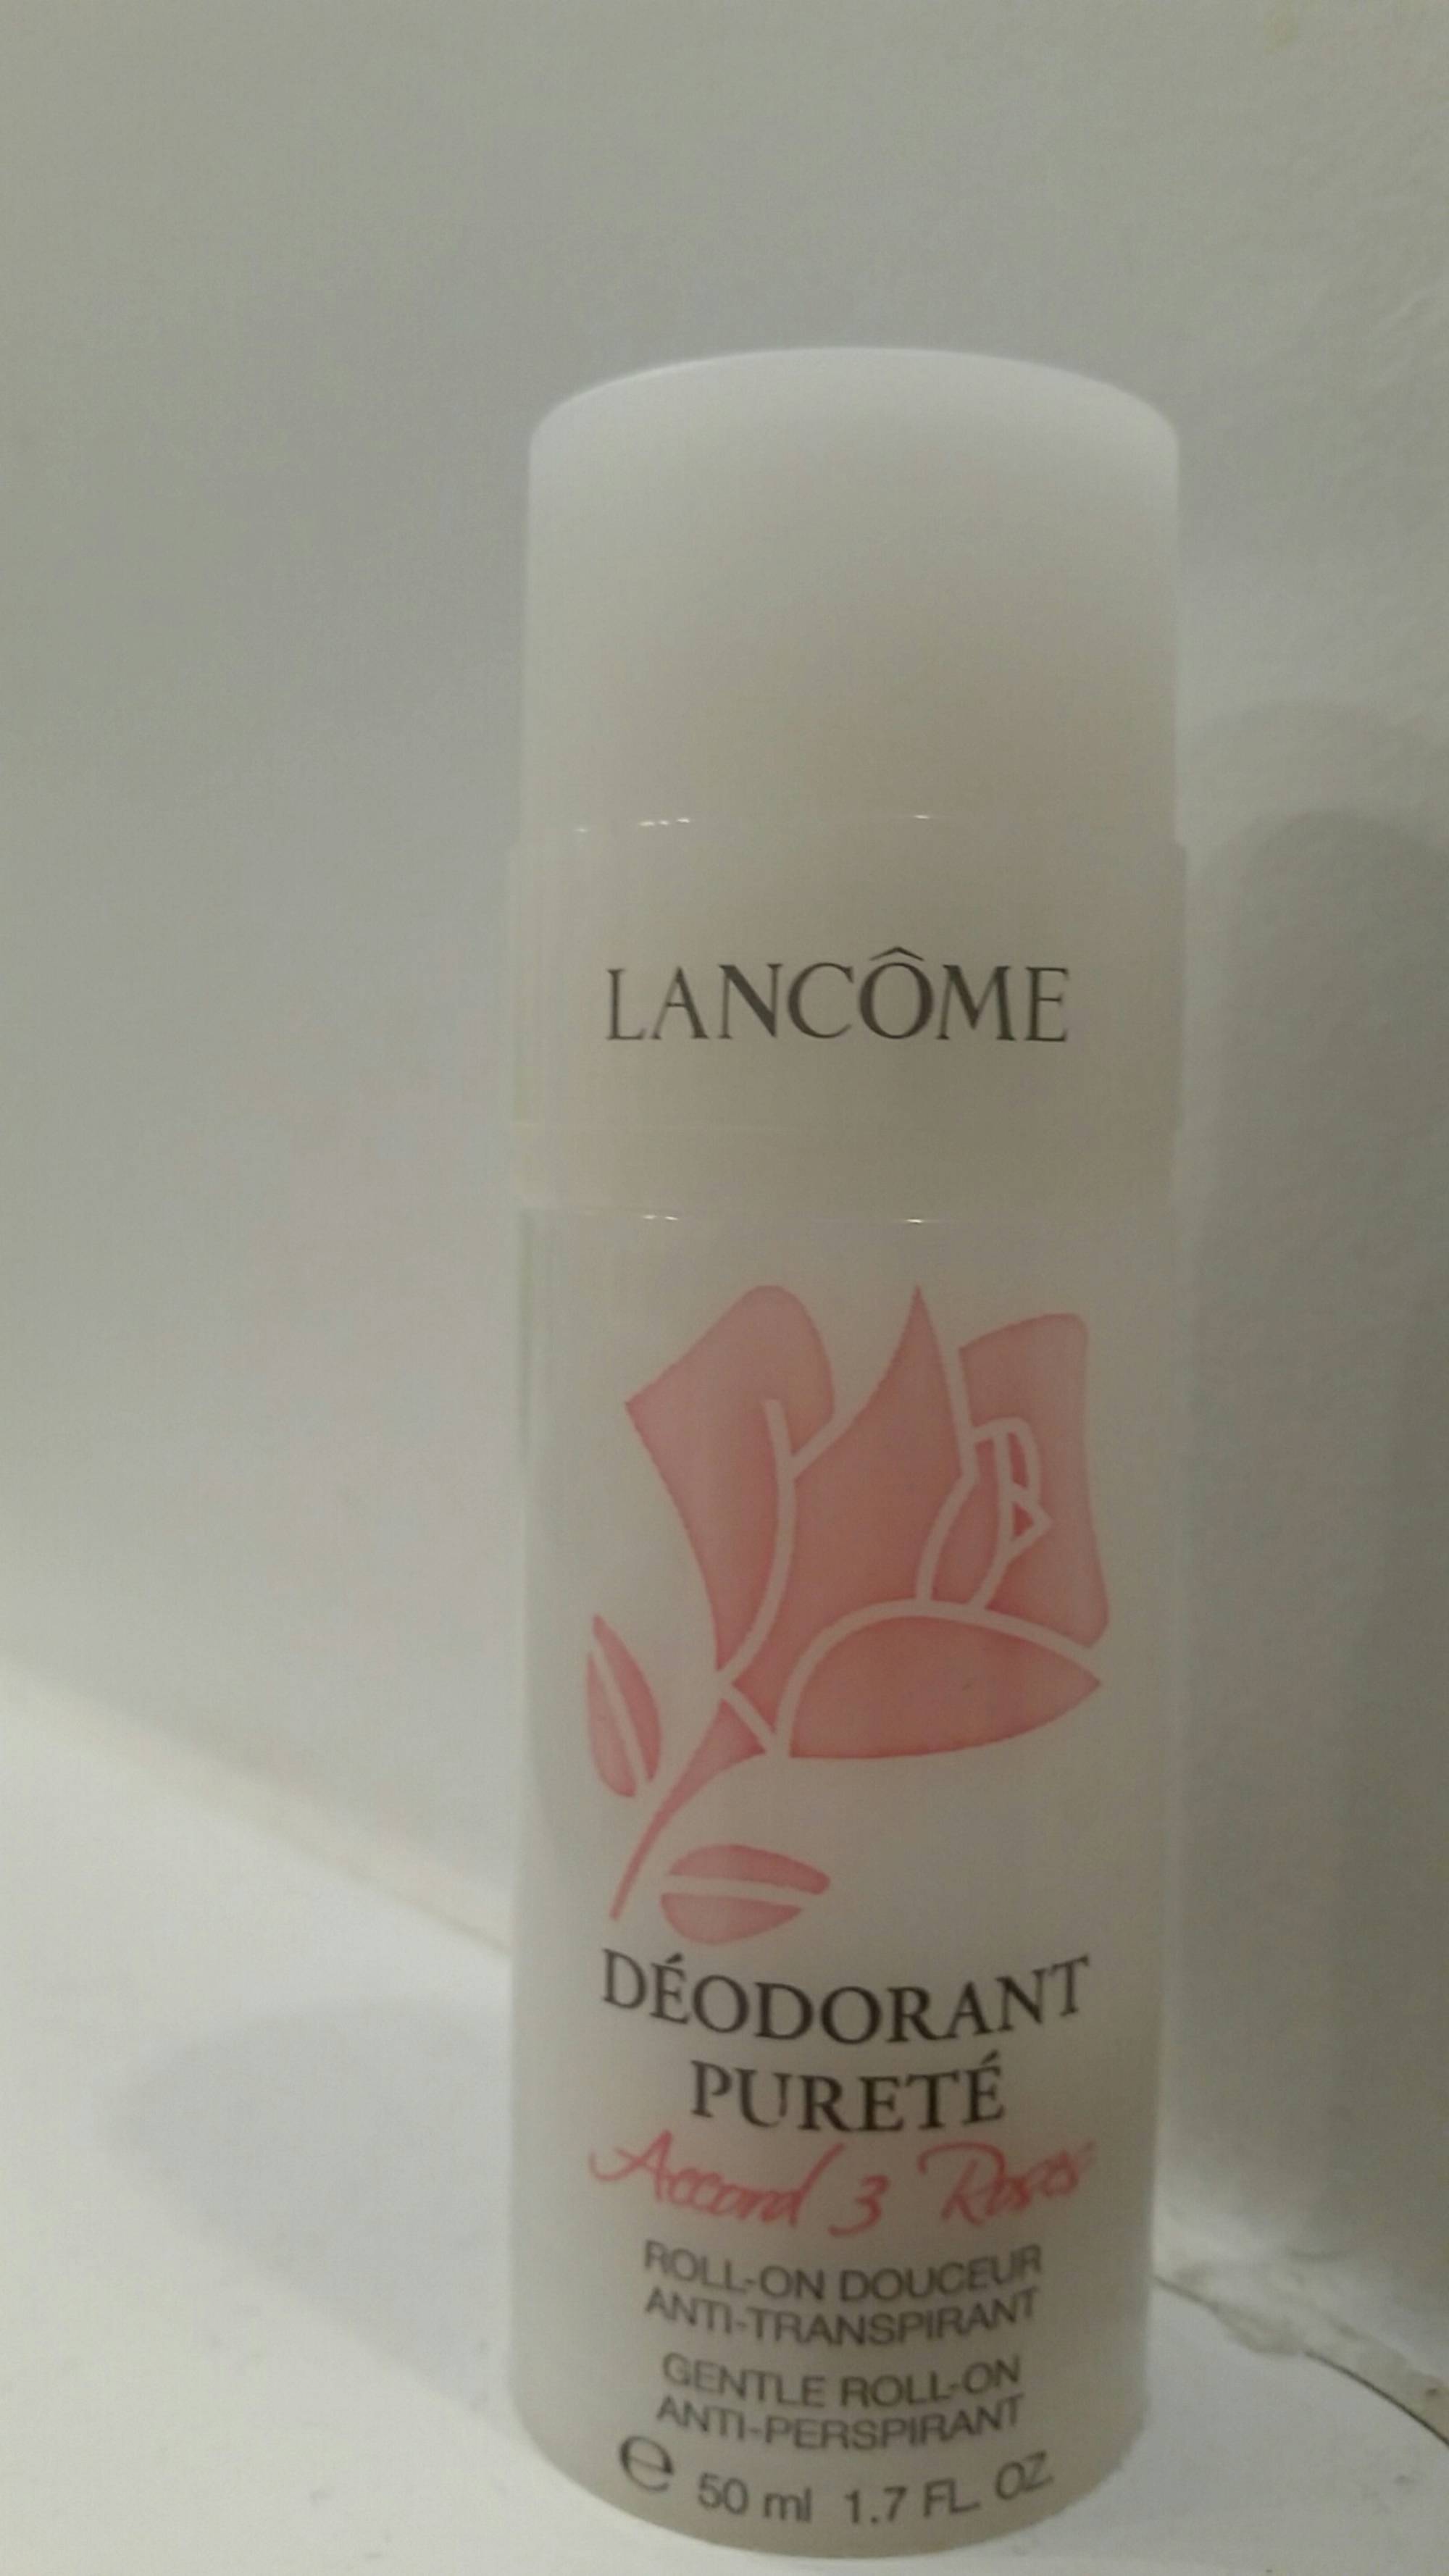 LANCÔME - Accord 3 roses - Déodorant pureté roll-on douceur